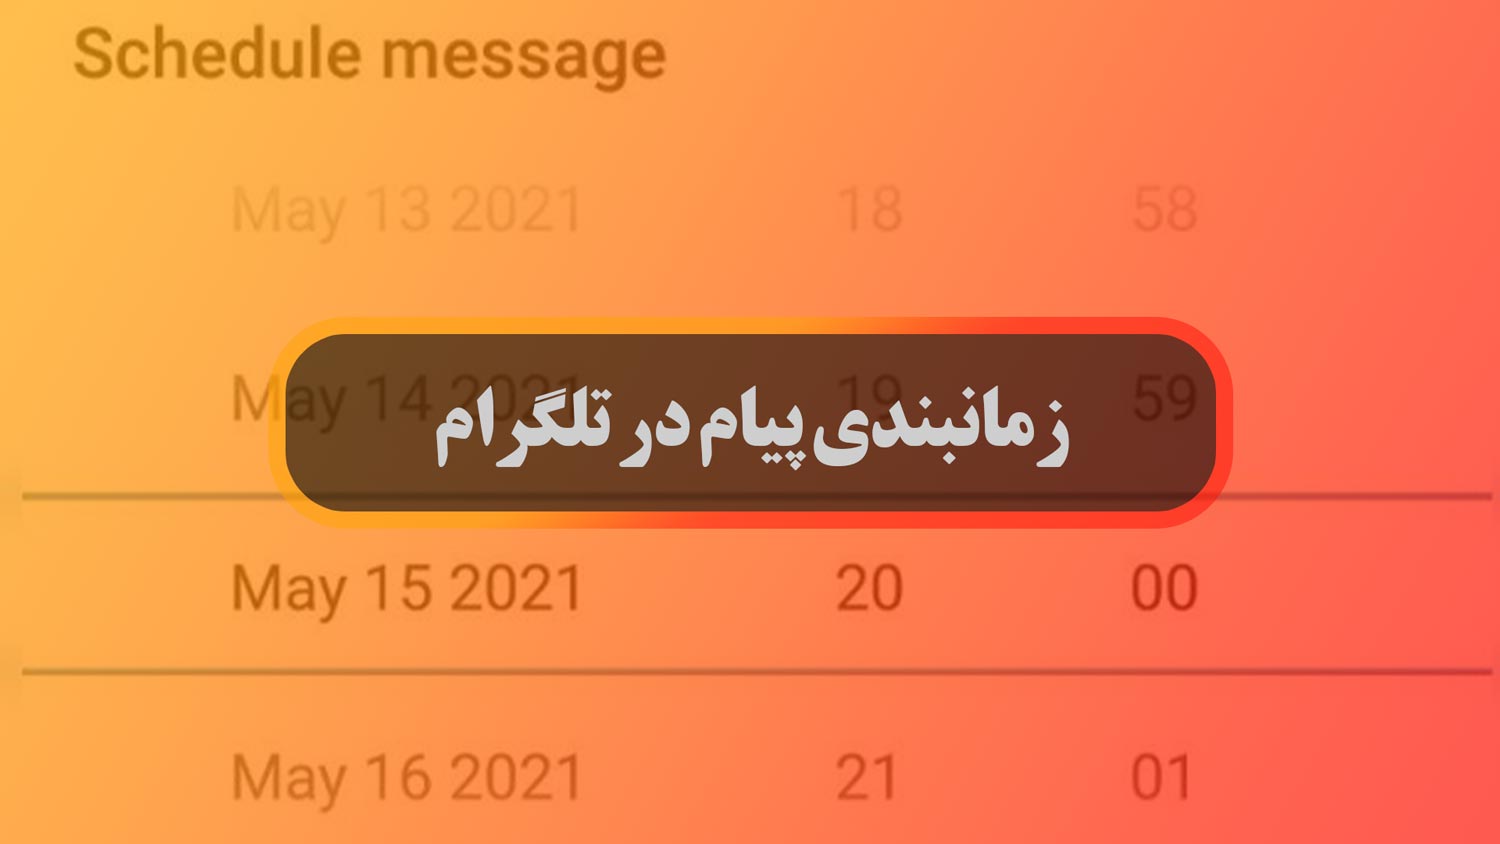 ارسال پیام زمانبندی شده در تلگرام با تایمر تلگرام